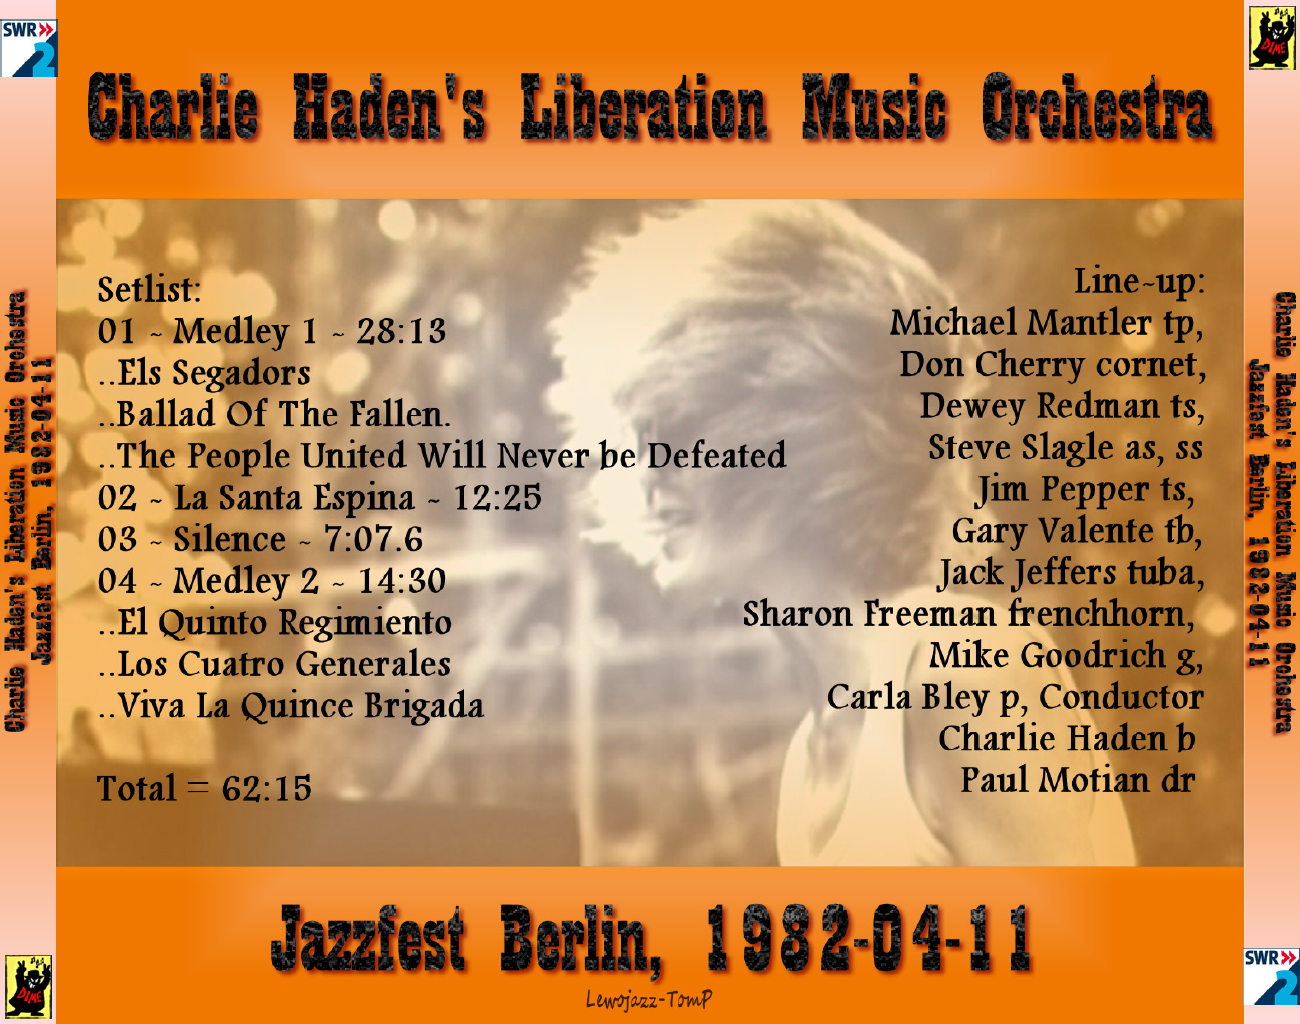 CharlieHadensLiberationMusicOrchestra1982-04-11PhilharmonieBerlinGermany (5).png